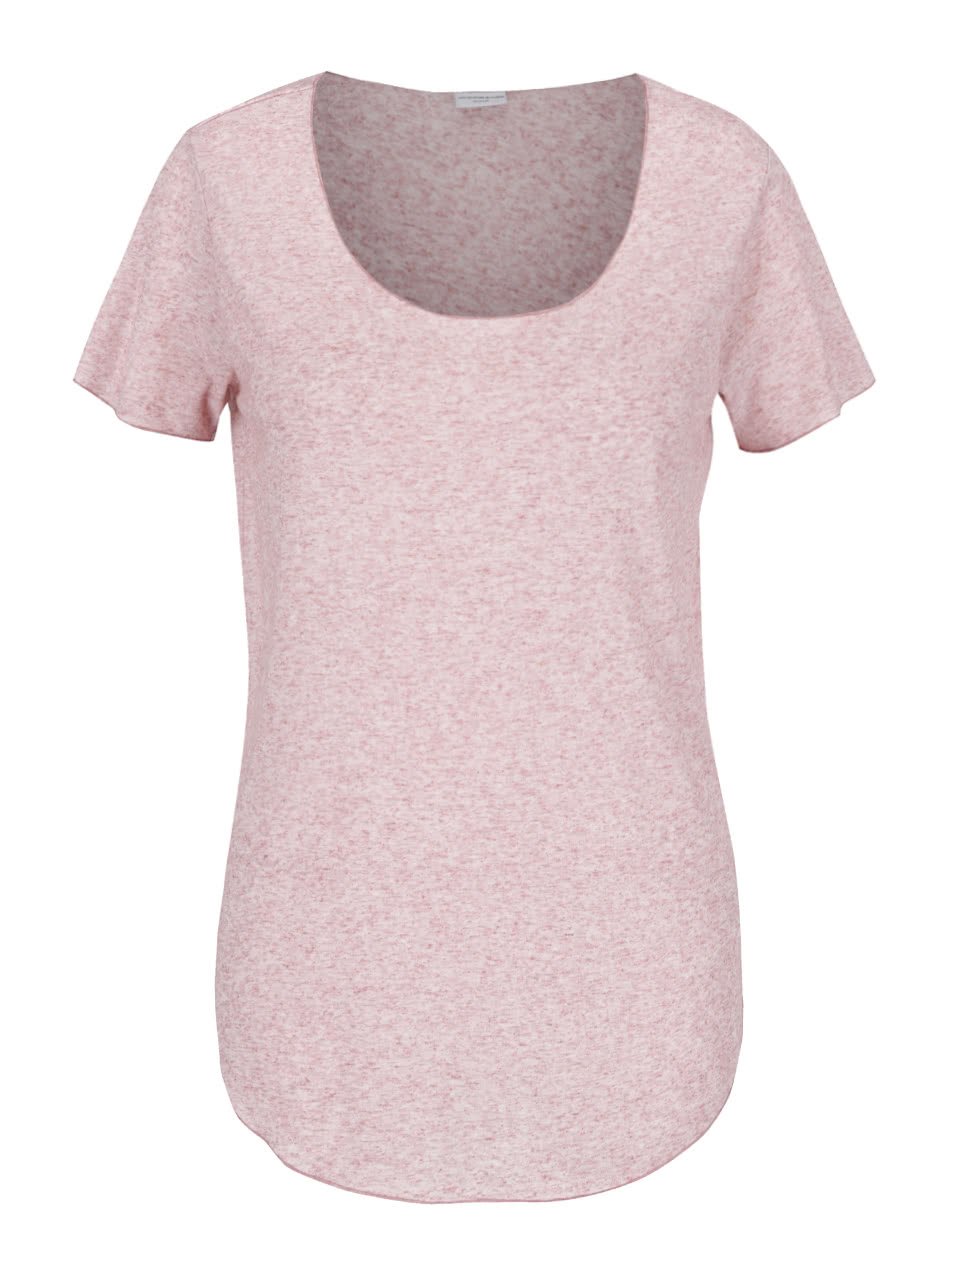 Růžové žíhané tričko s příměsí lnu Jacqueline de Yong Linette